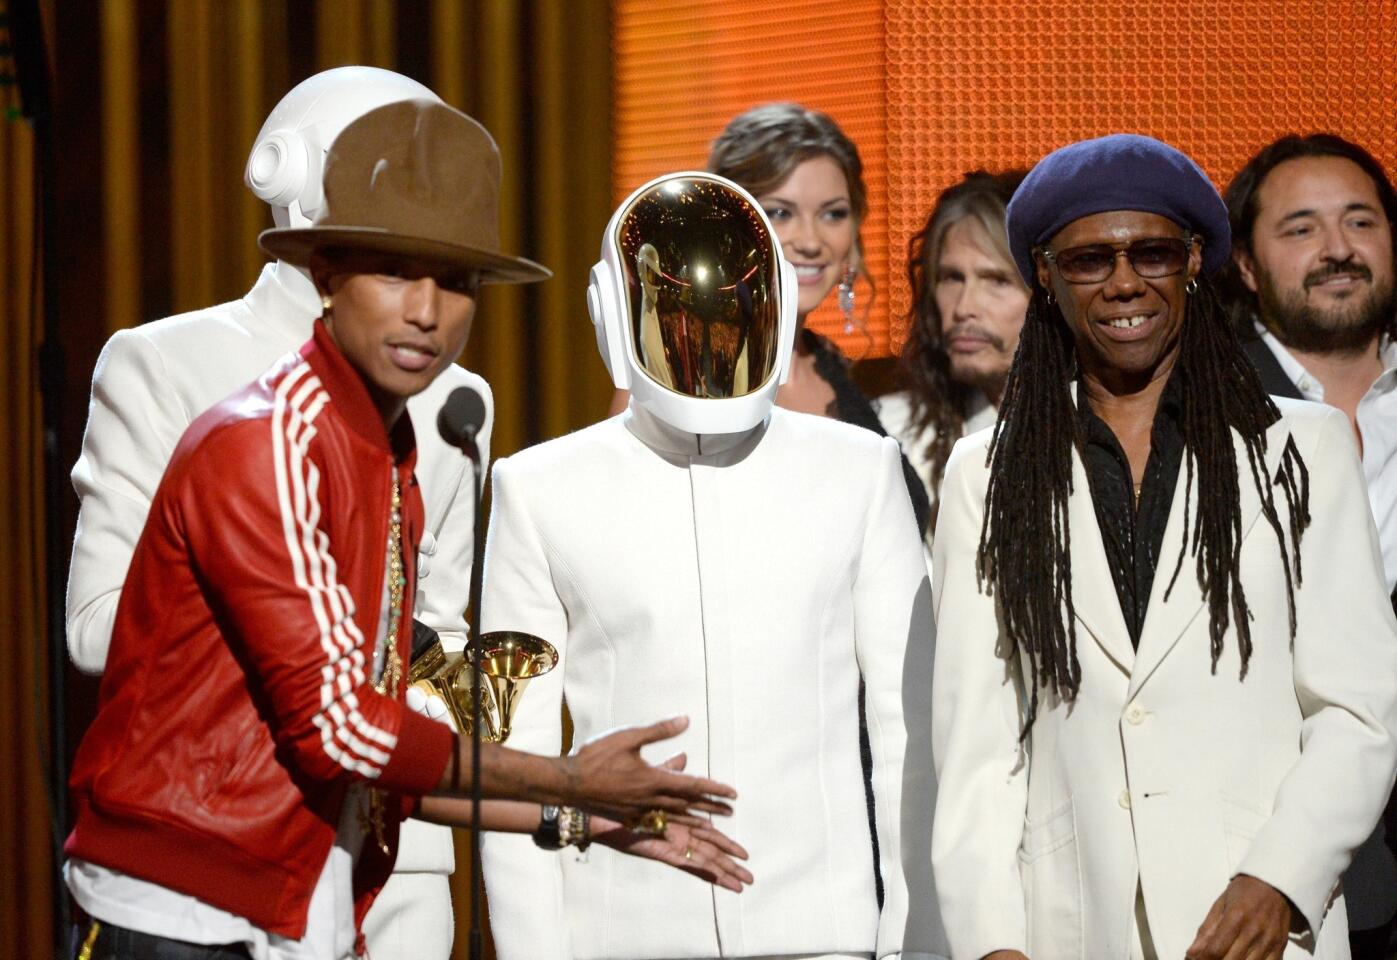 Grammys 2014